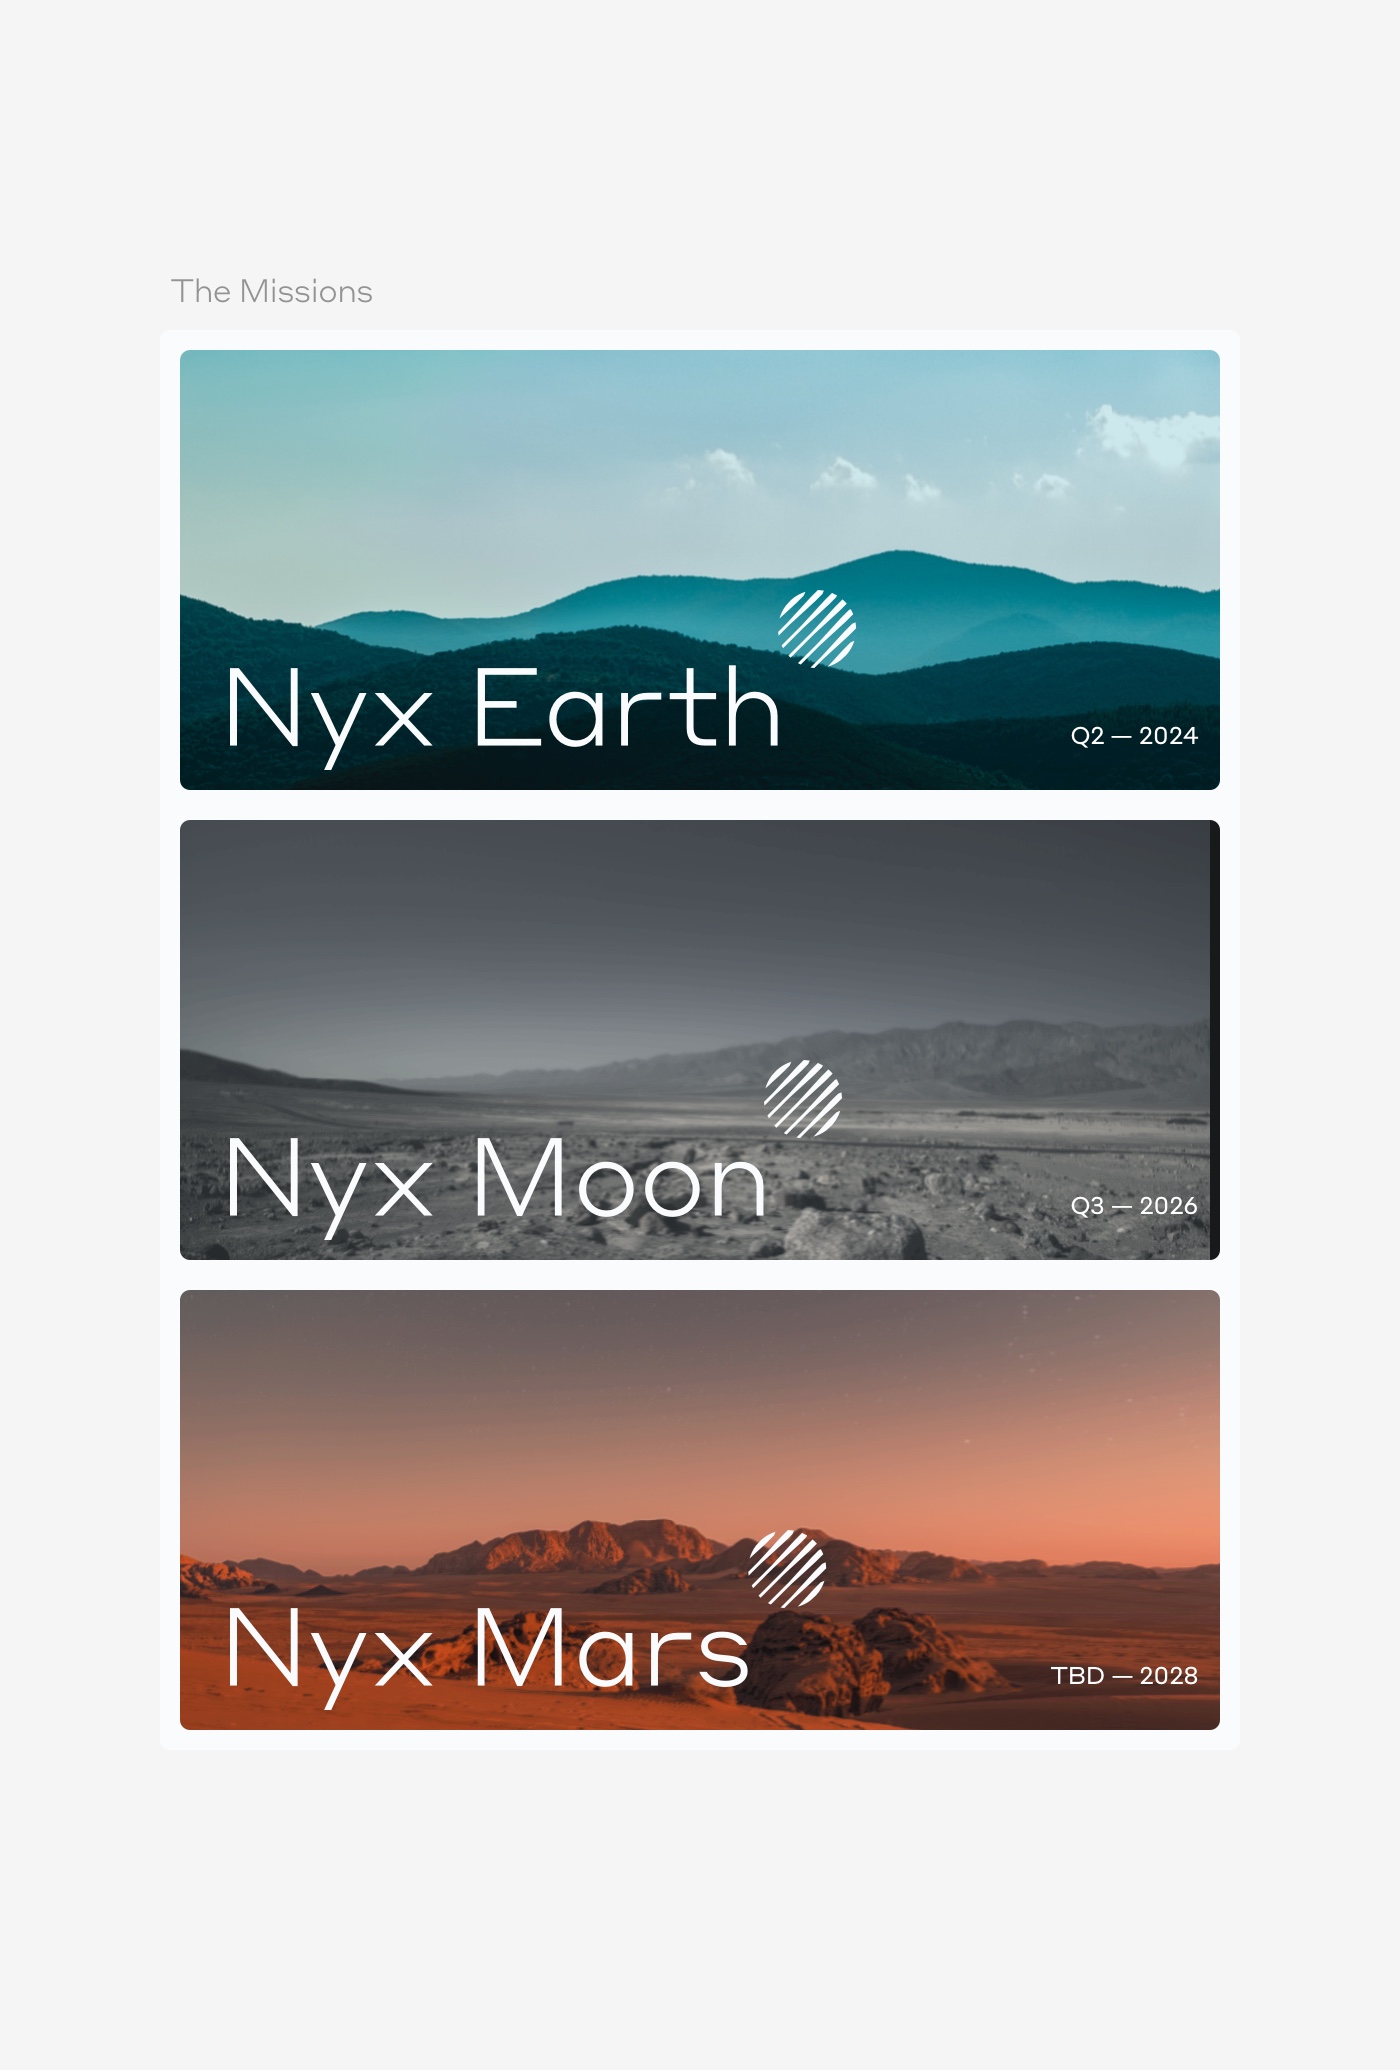 the exploration company nyx mission